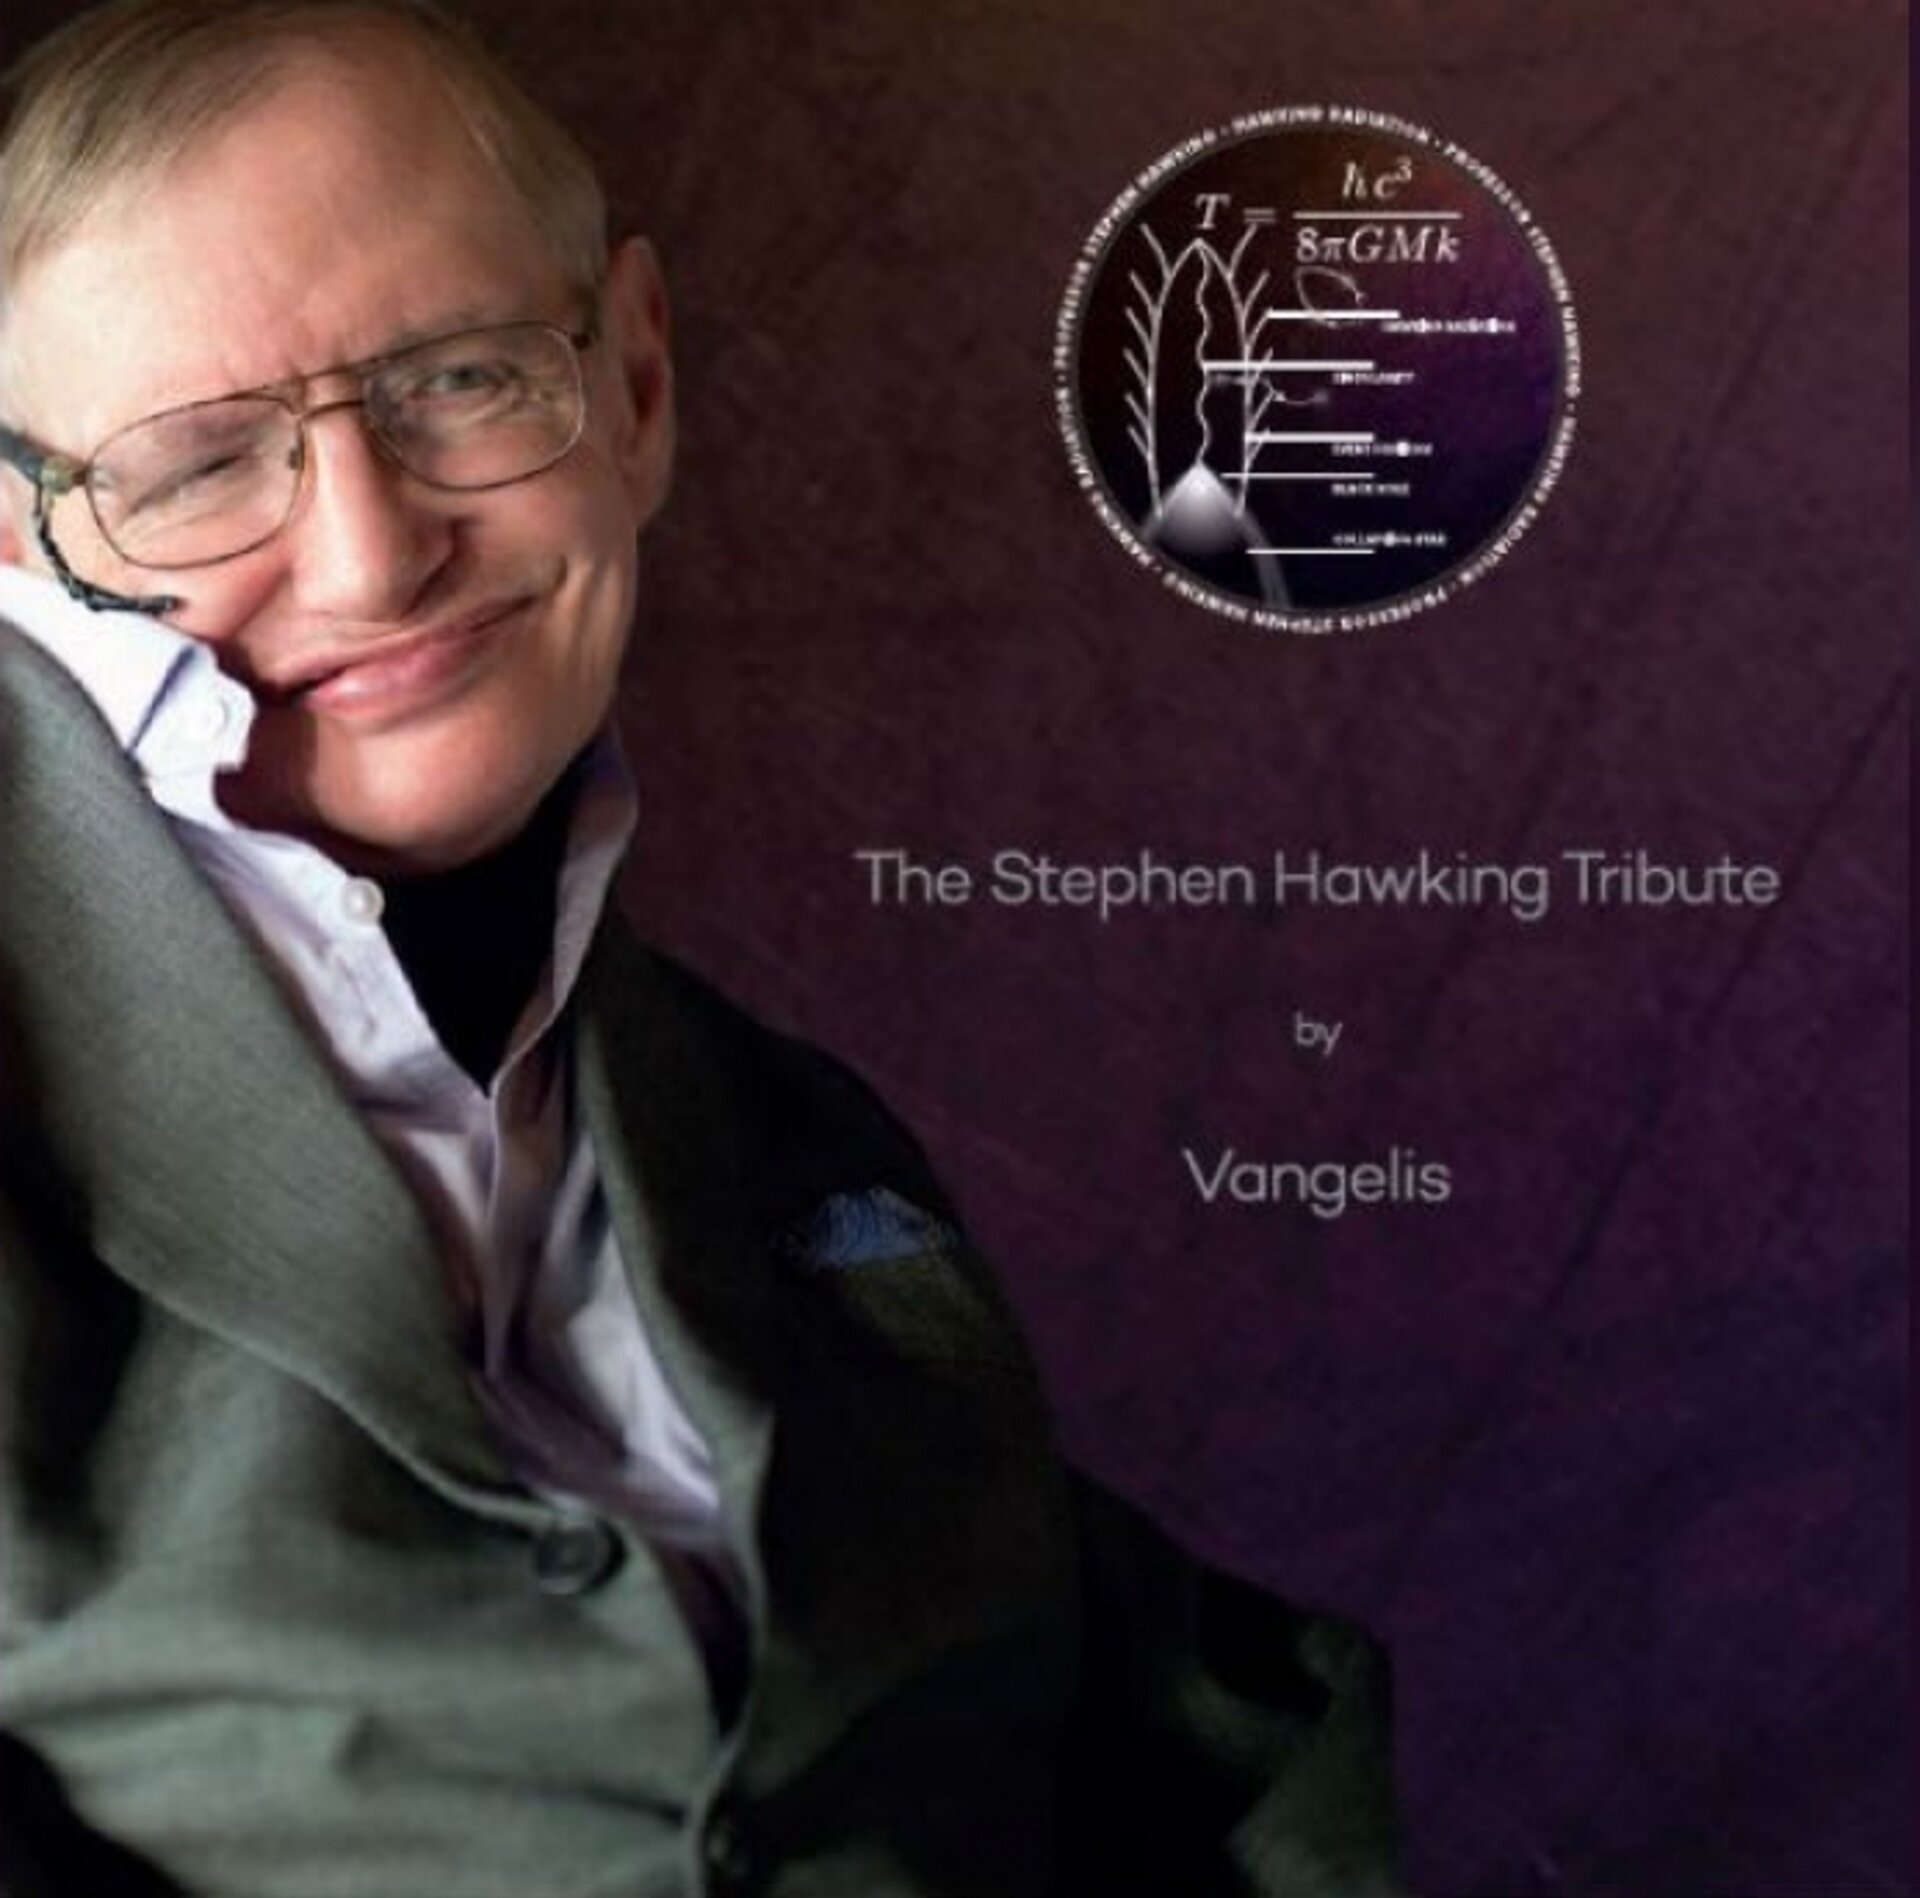 Stephen Hawking Tribute CD by Vangelis